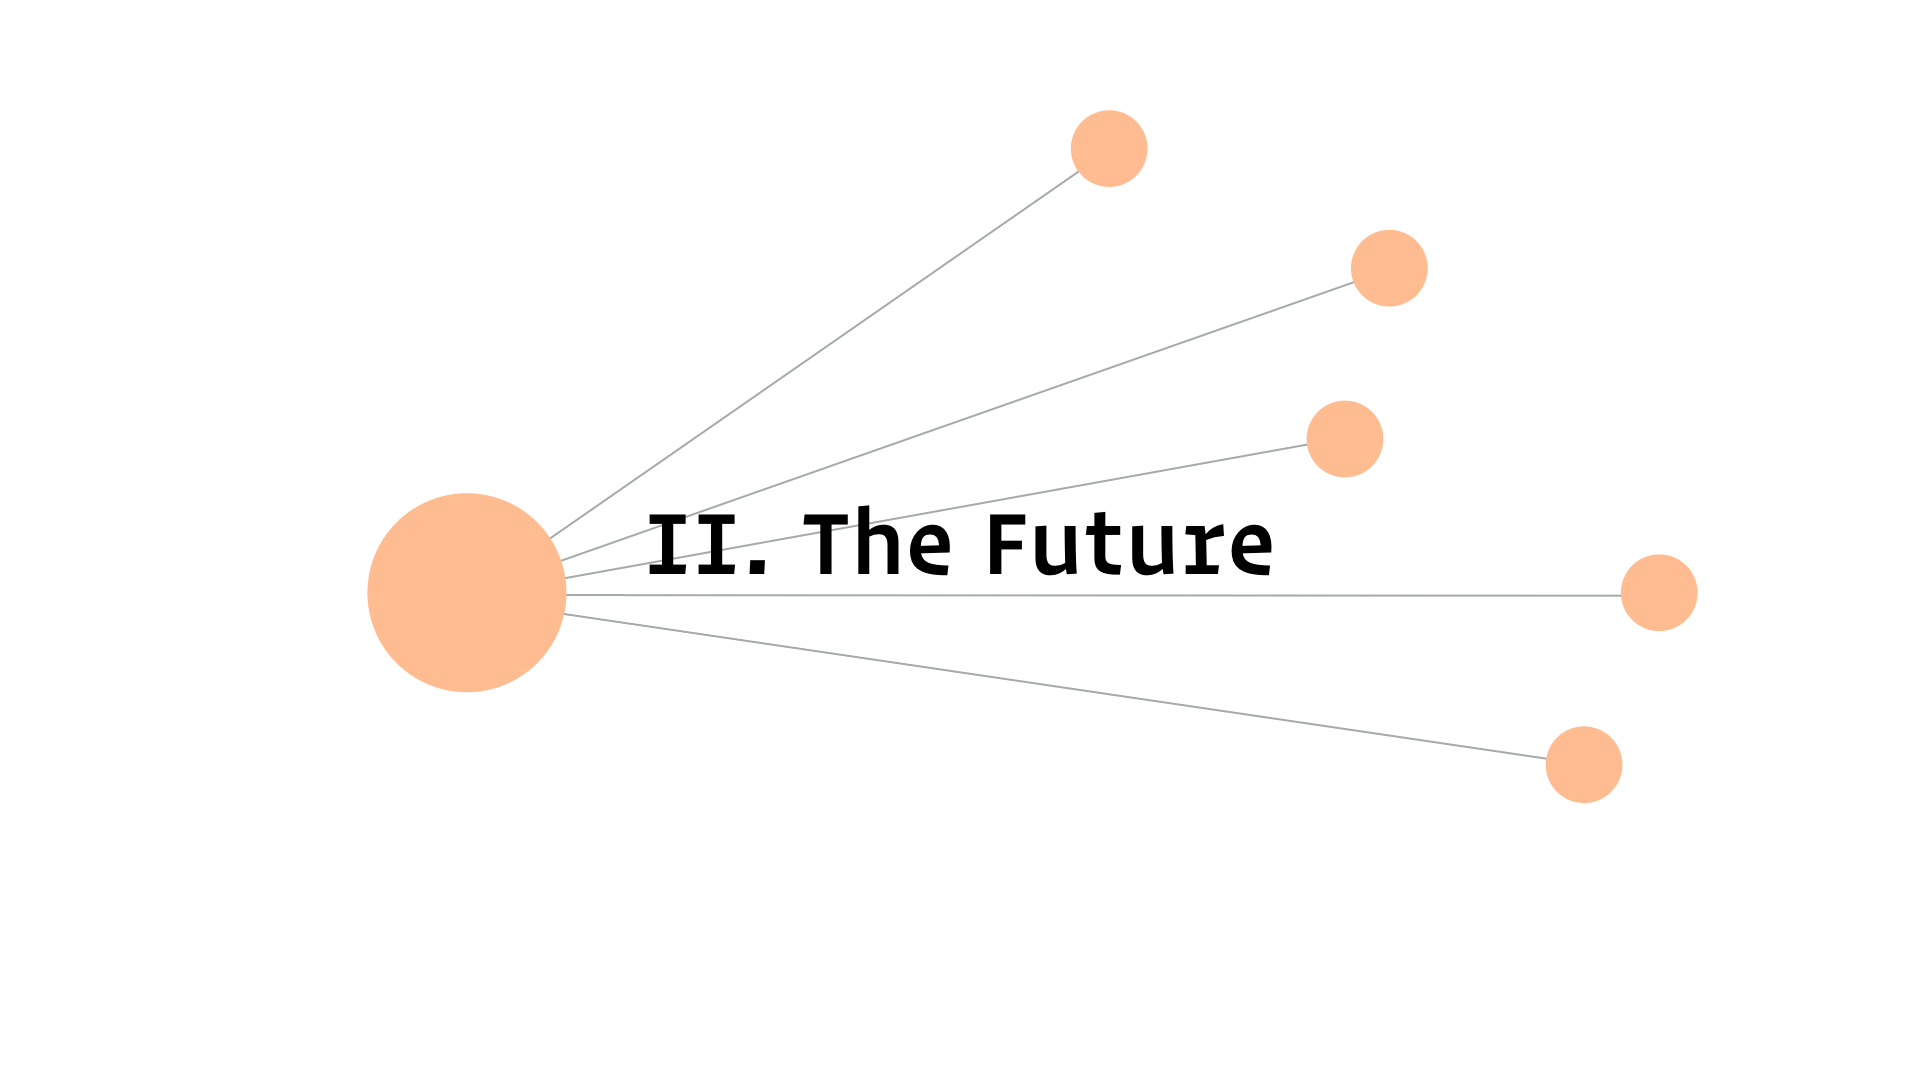 II. The Future